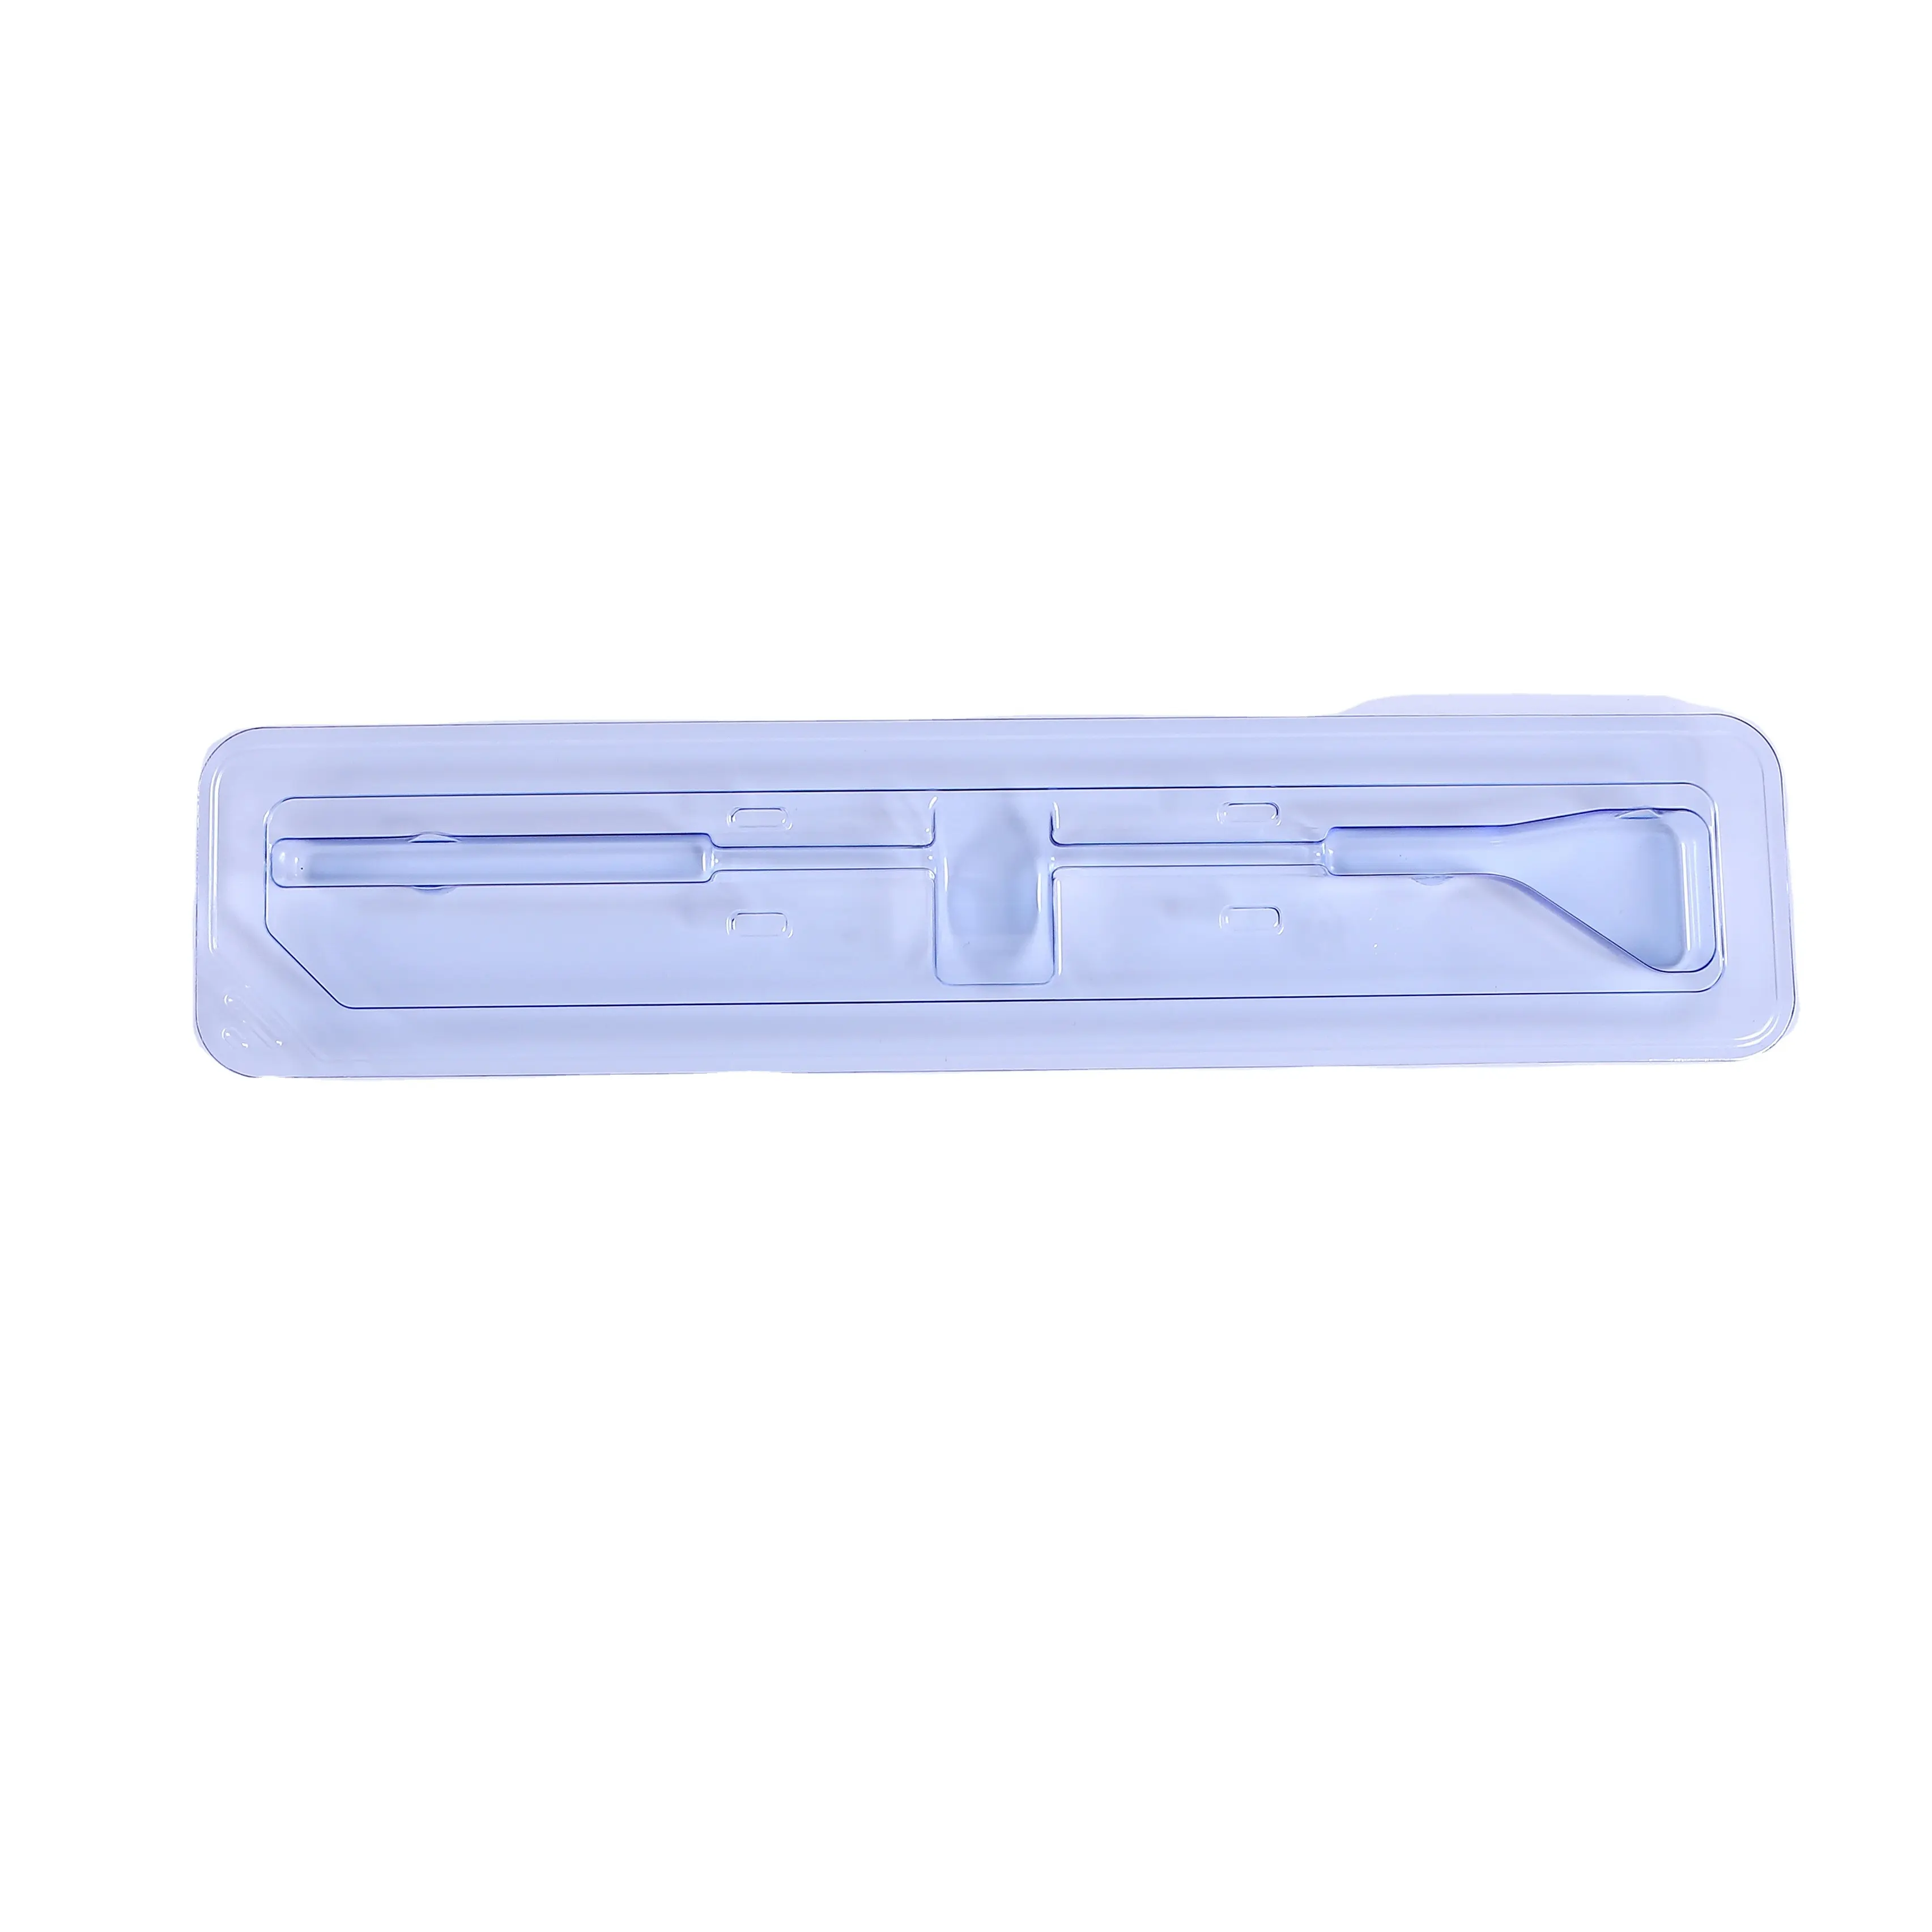 Производитель, индивидуальная полиэтилентерефталатная пластиковая упаковка для шприцев и других медицинских устройств